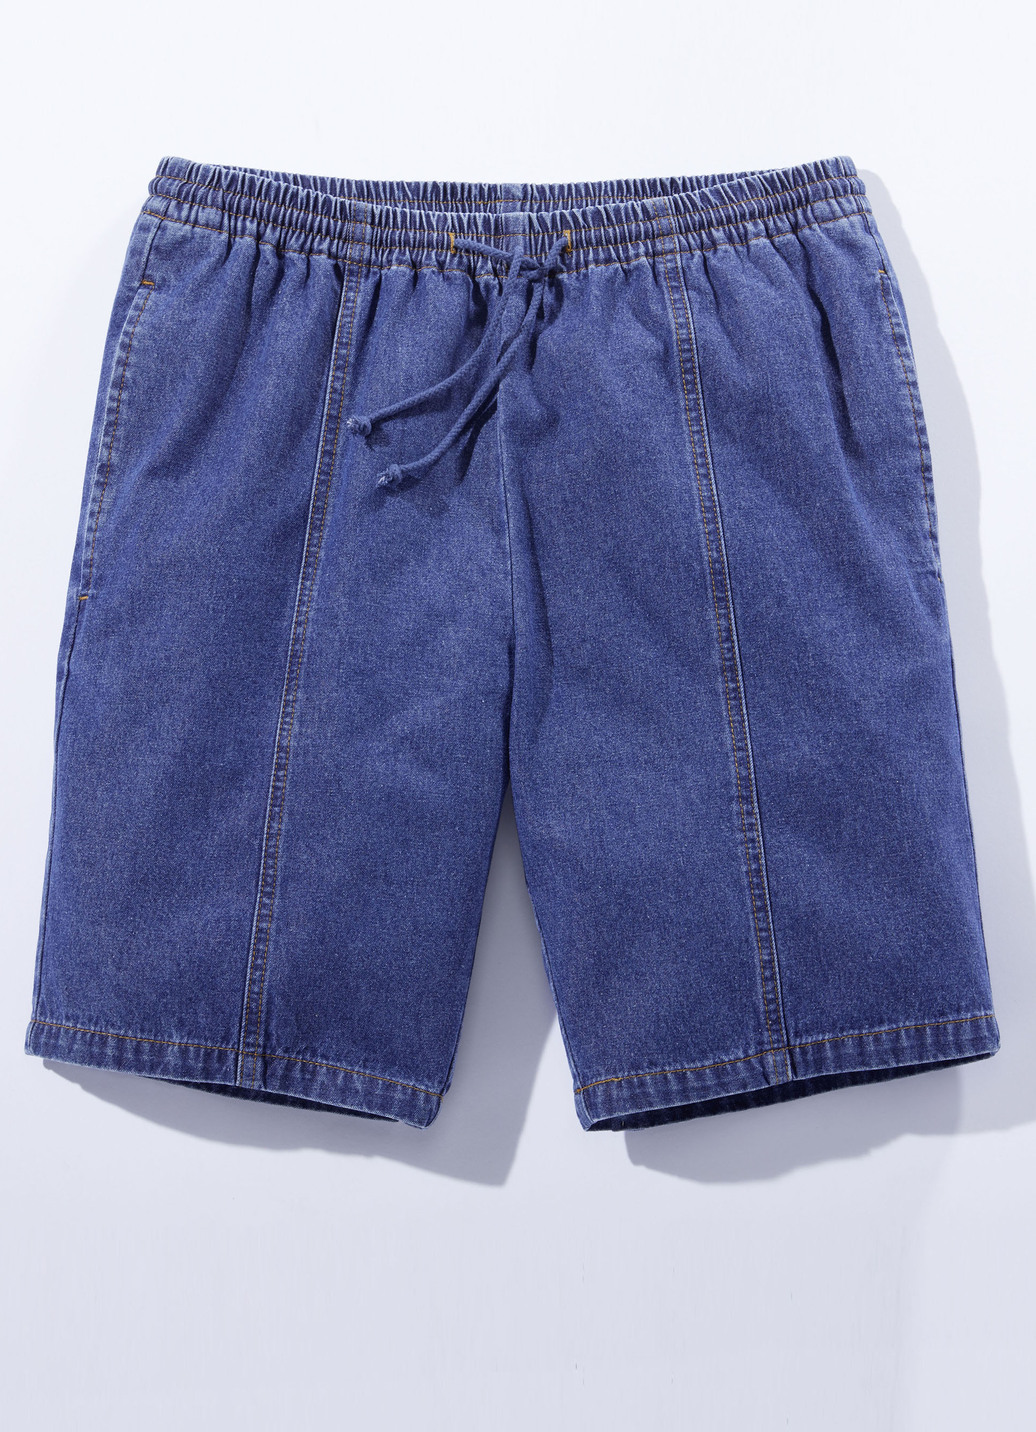 Bequeme Schlupf-Shorts in 4 Farben, Jeansblau, Größe 58 von BADER